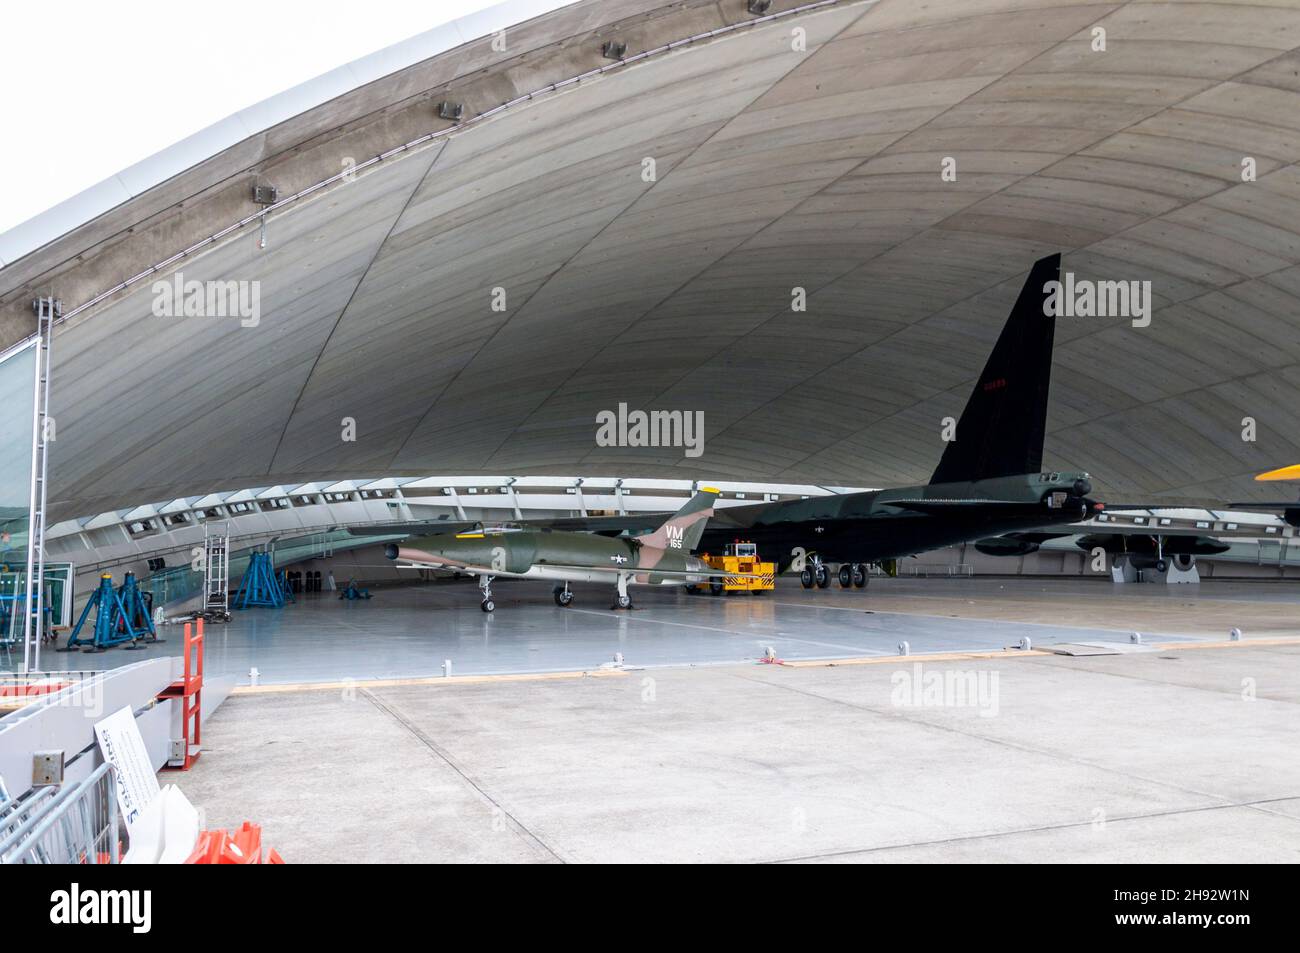 Avions à réaction USAF à l'intérieur du hangar ouvert lors d'importants travaux de développement du Musée de l'air américain au Musée de la guerre Impérial, Duxford, Royaume-Uni. Banque D'Images